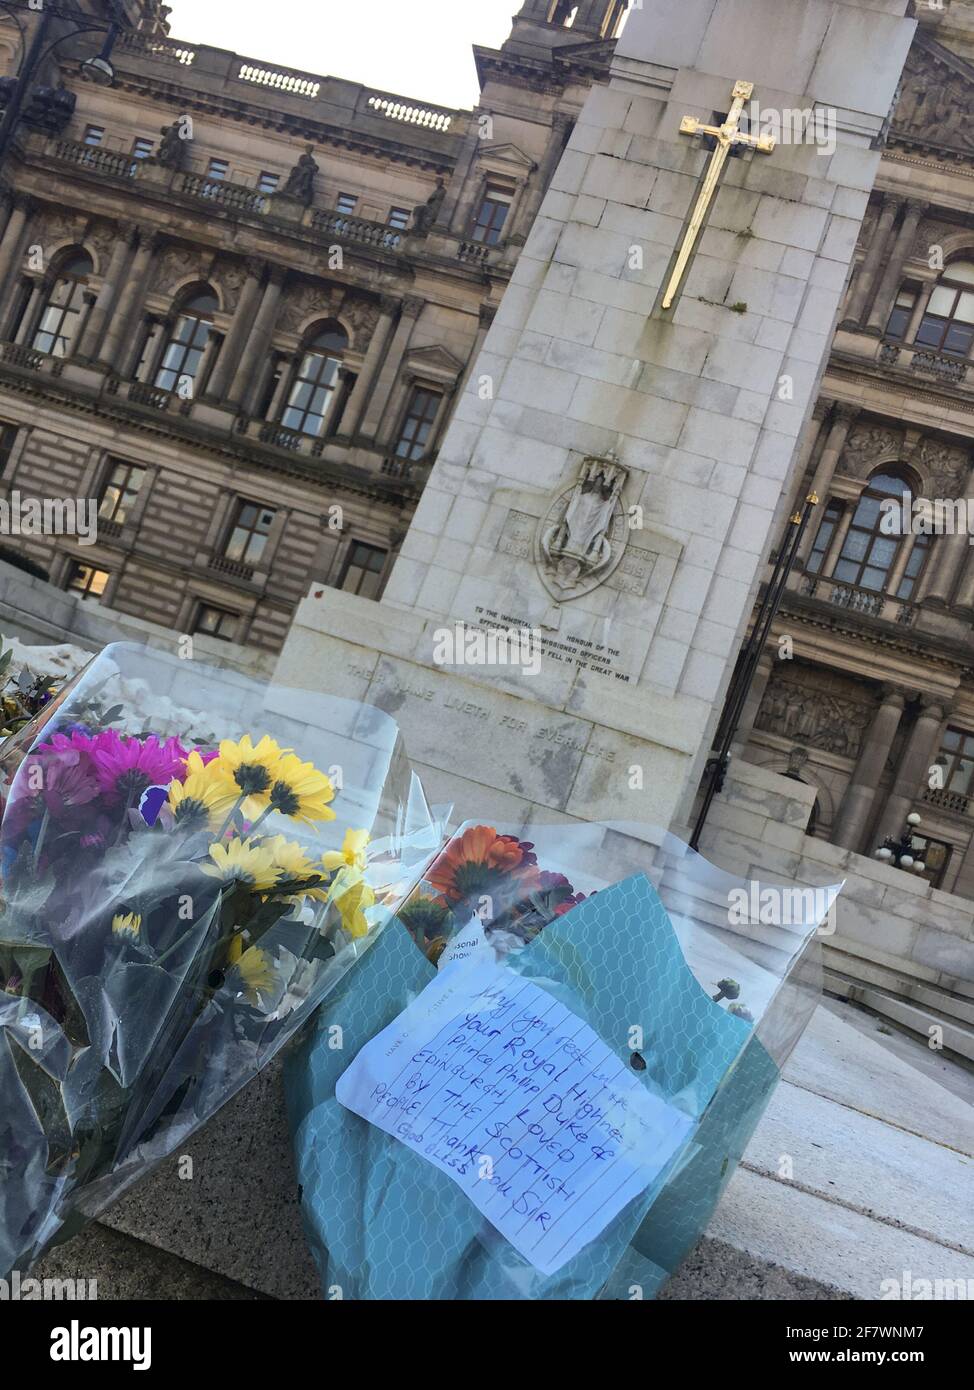 Glasgow, Royaume-Uni, le 10 avril 2021. Fleurs déposées au Cenotaph sur la place George en hommage à son Altesse Royale le prince Philip, duc d'Édimbourg, alors que la nation pleure son décès à l'âge de 99 ans. Crédit photo : Jeremy Sutton-Hibbert/Alay Live News Banque D'Images